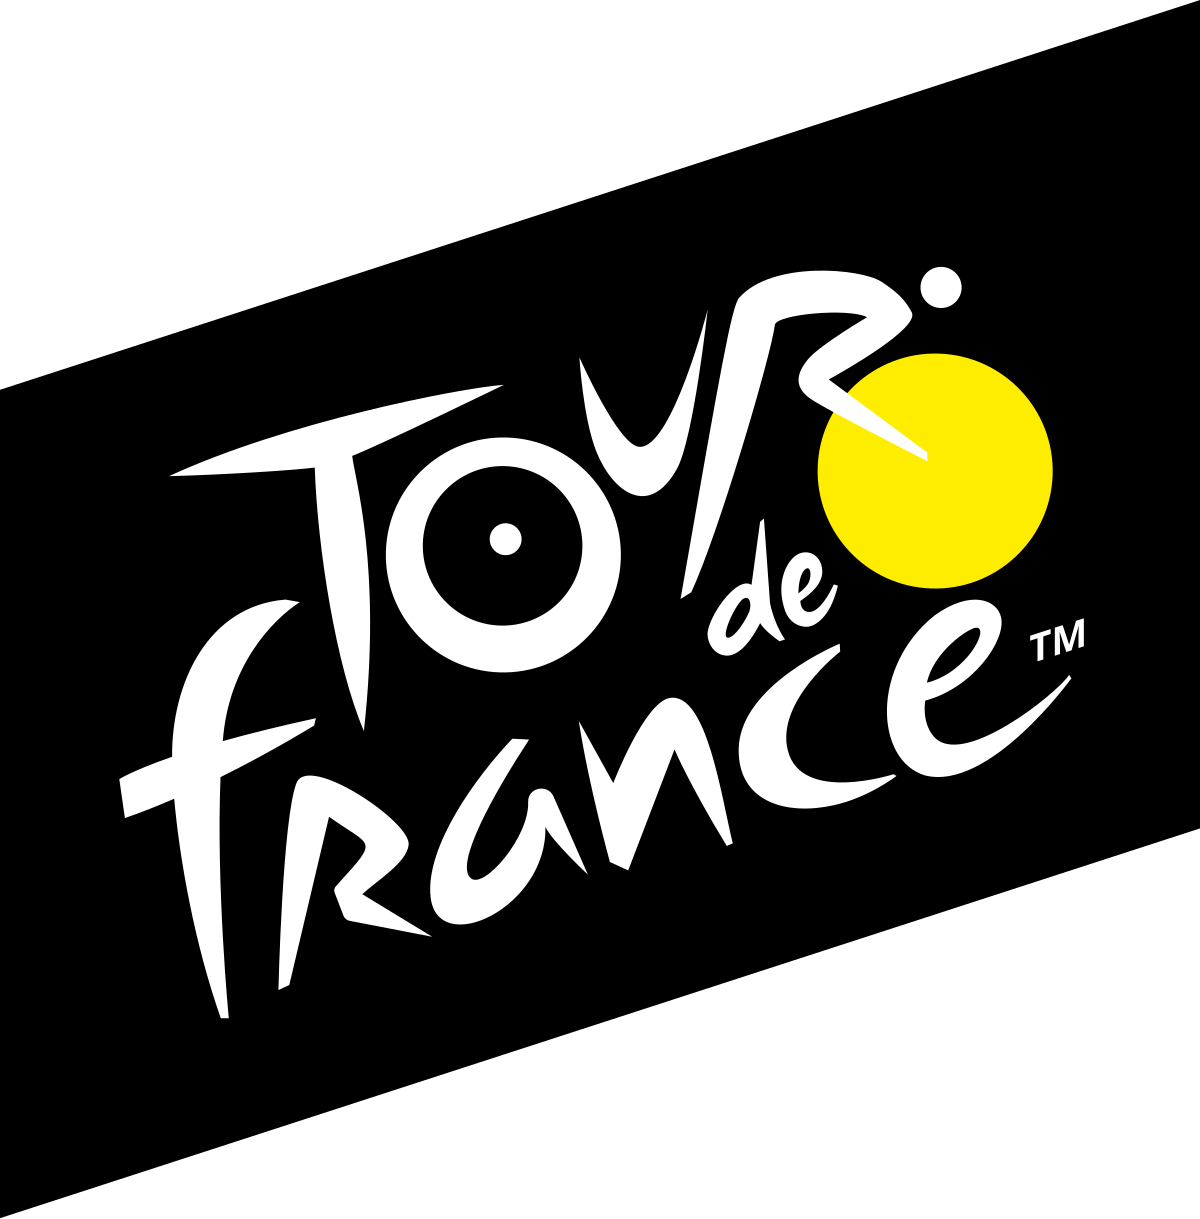 Tour de France logo PNG Image haute qualité